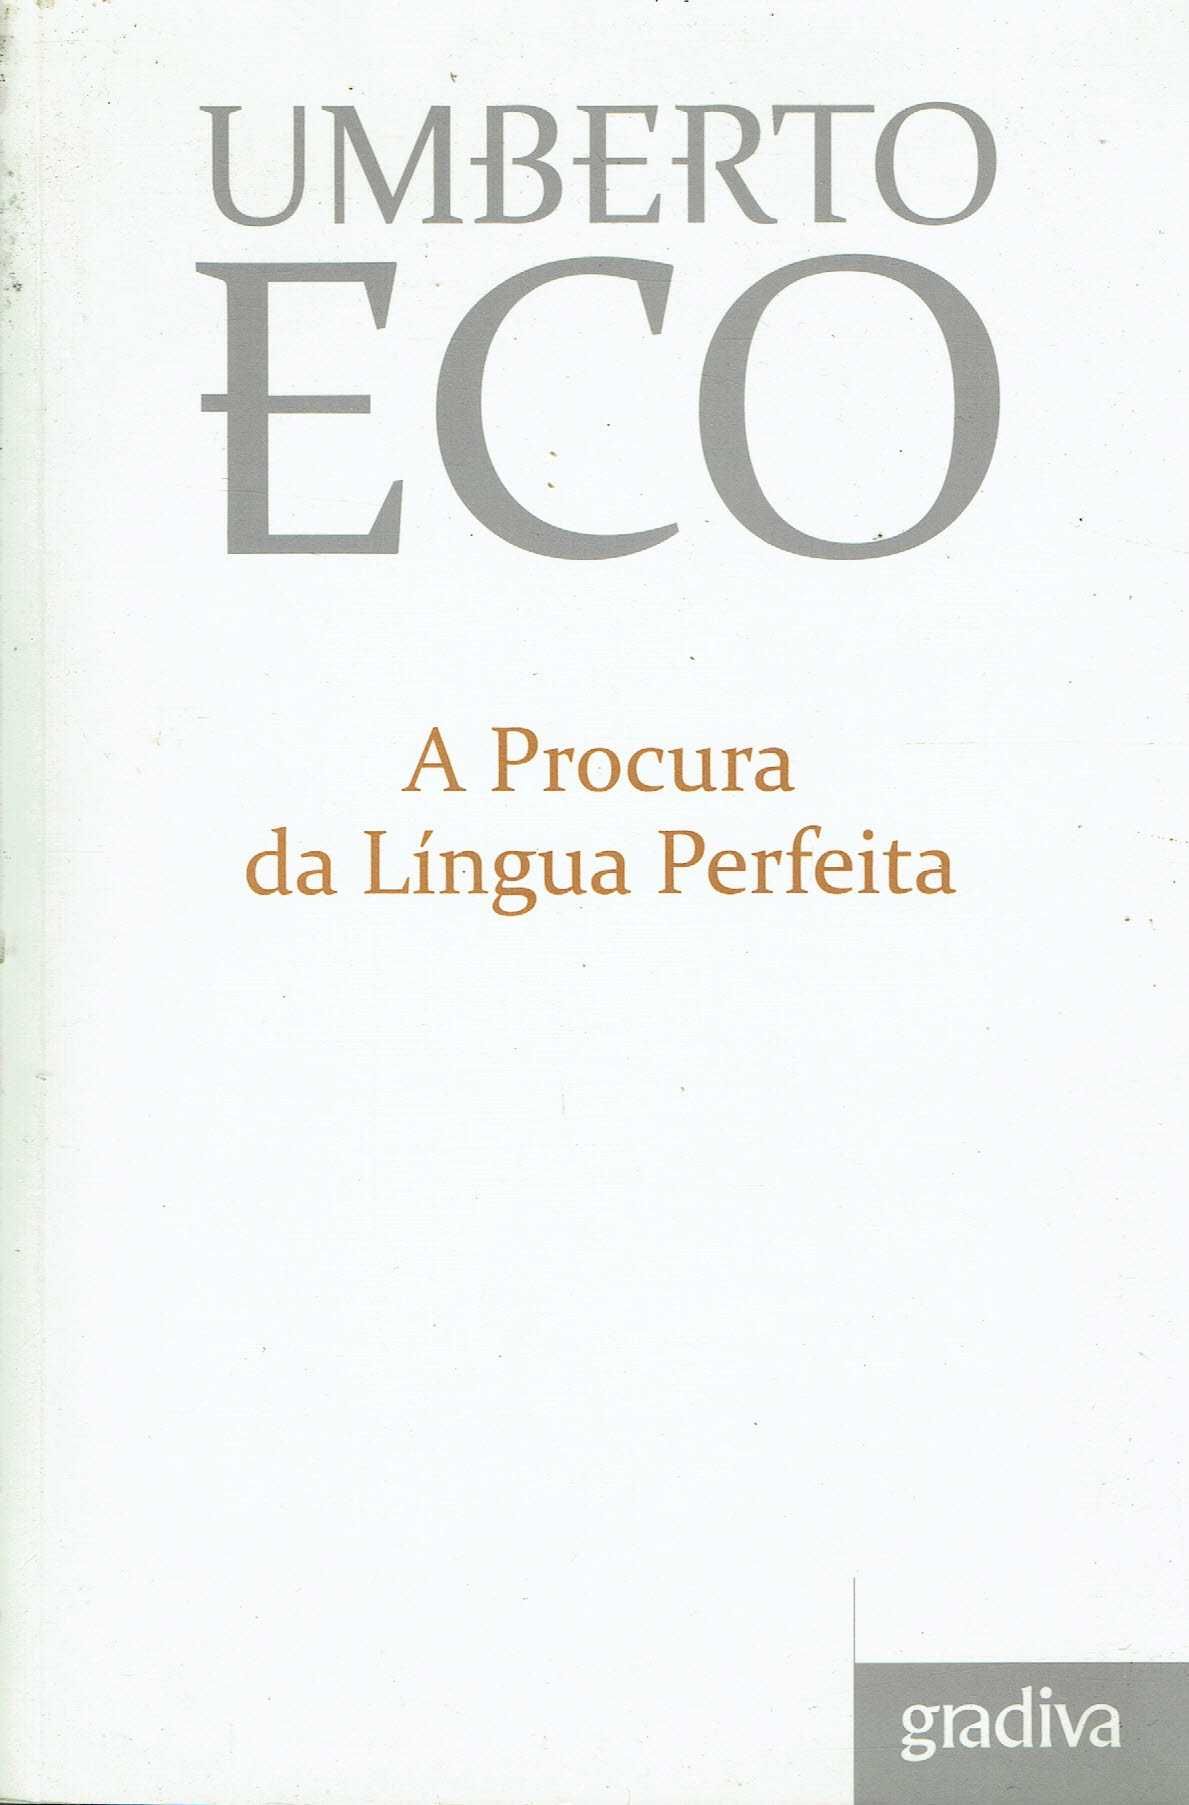 6749

A Procura da Língua Perfeita
de Umberto Eco